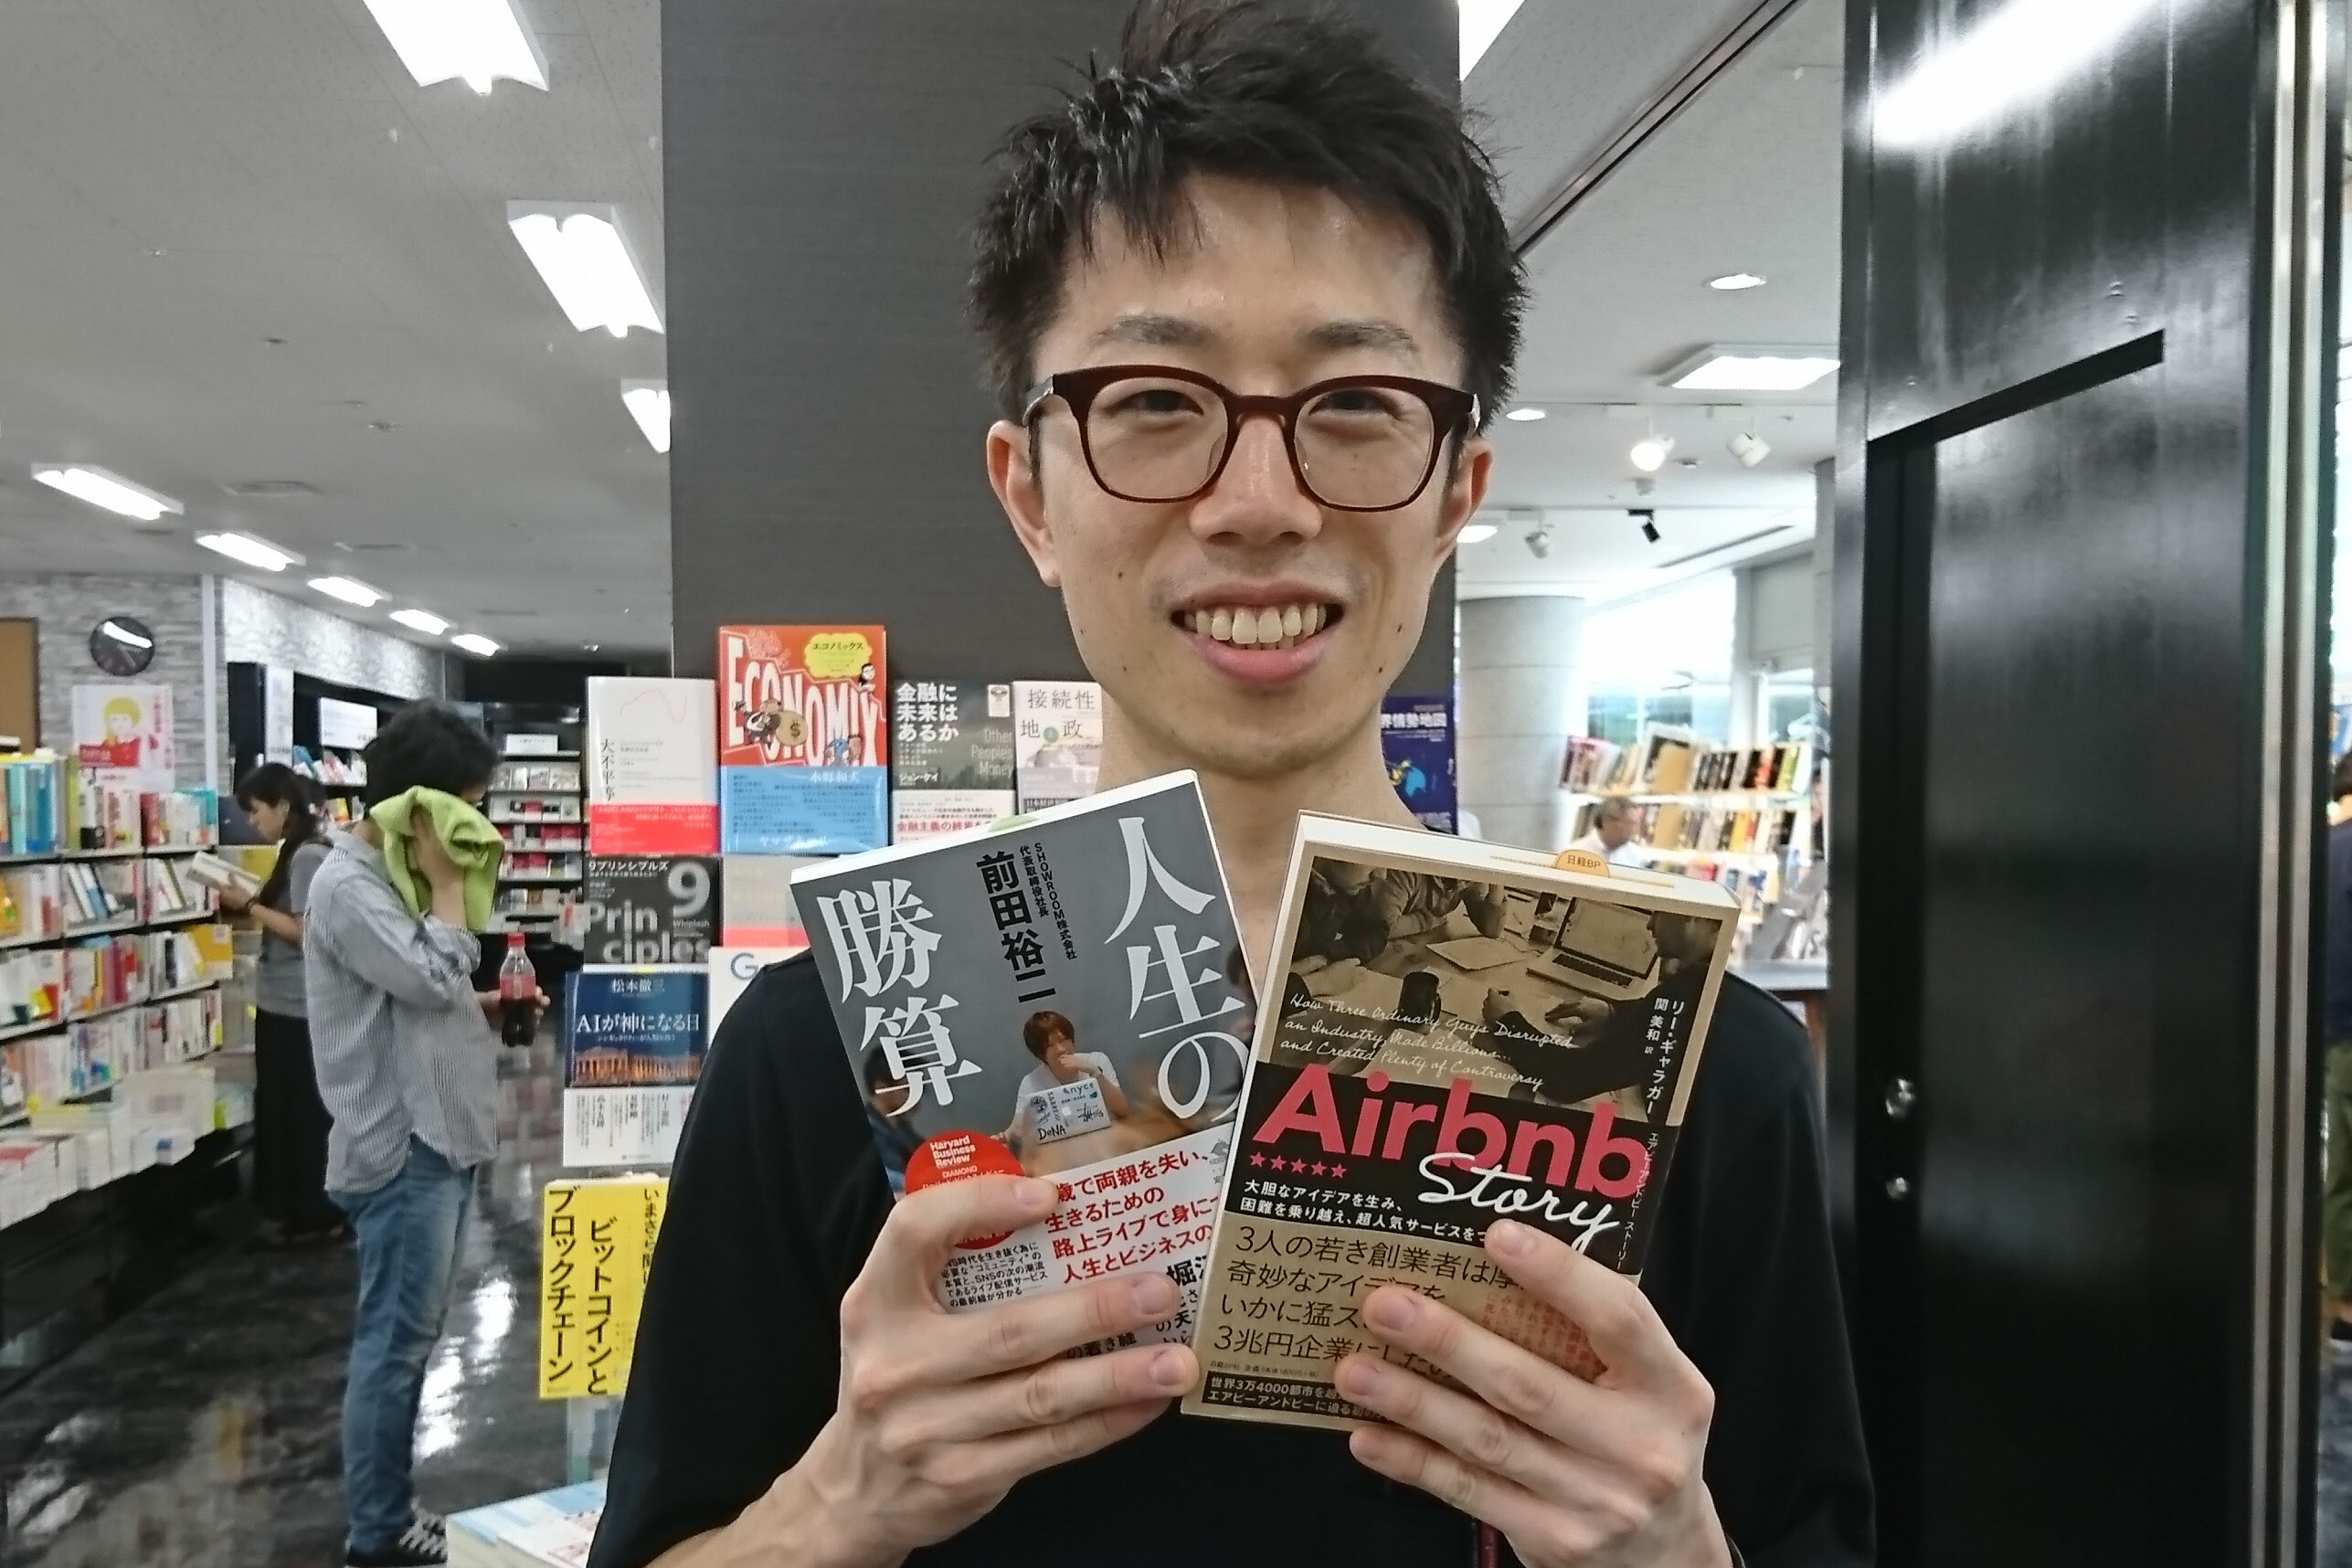 青山ブックセンター本店の益子陽介さんおすすめは「Airbnb Story」と「人生の勝算」